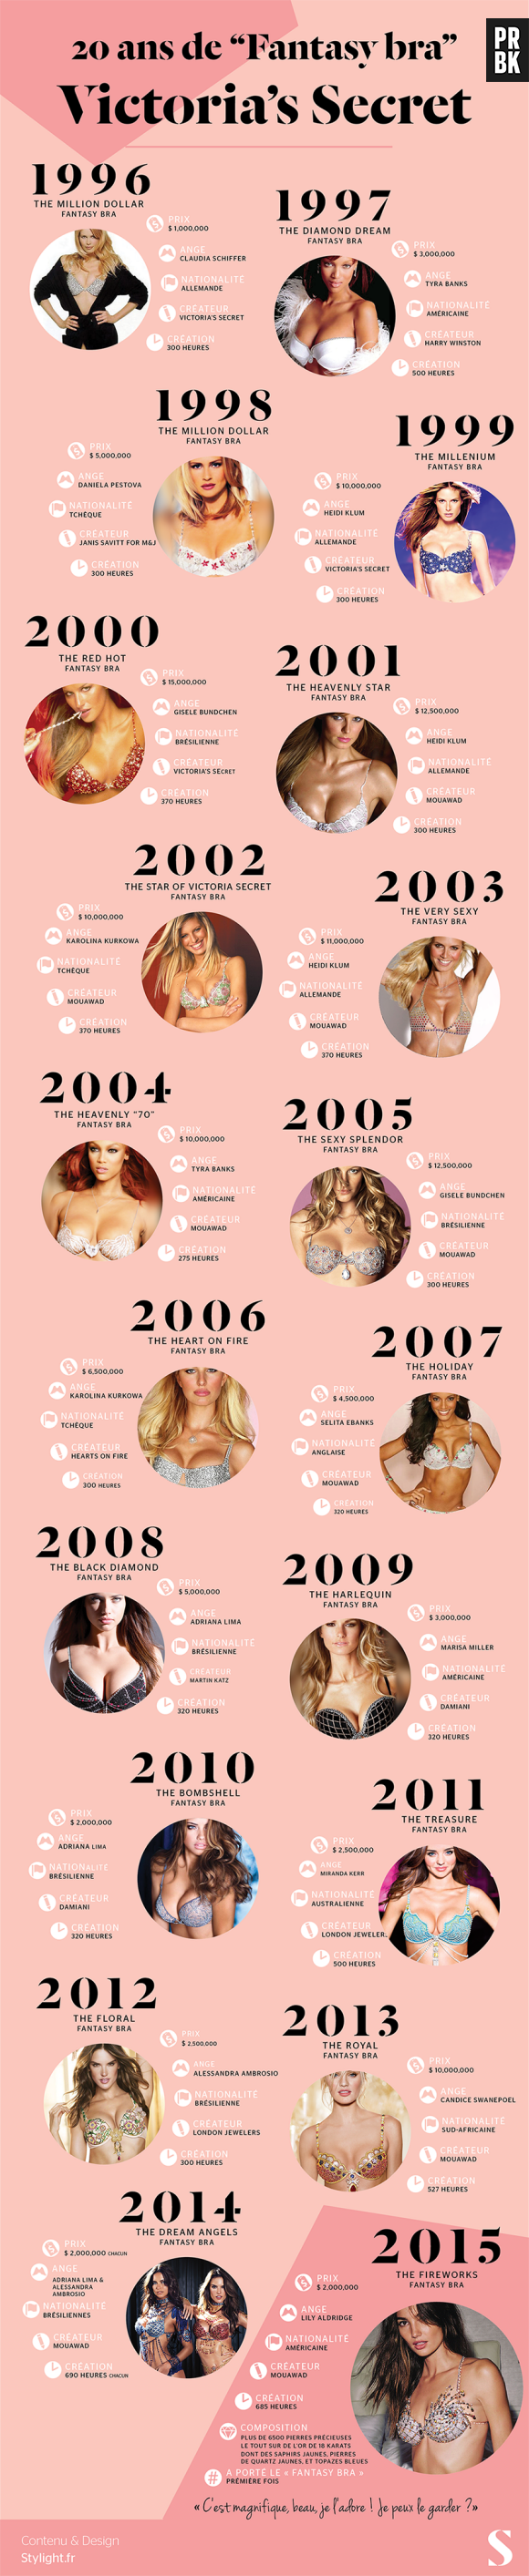 Victoria's Secret : 20 ans de fantasy bra, l'infographie de Stylight